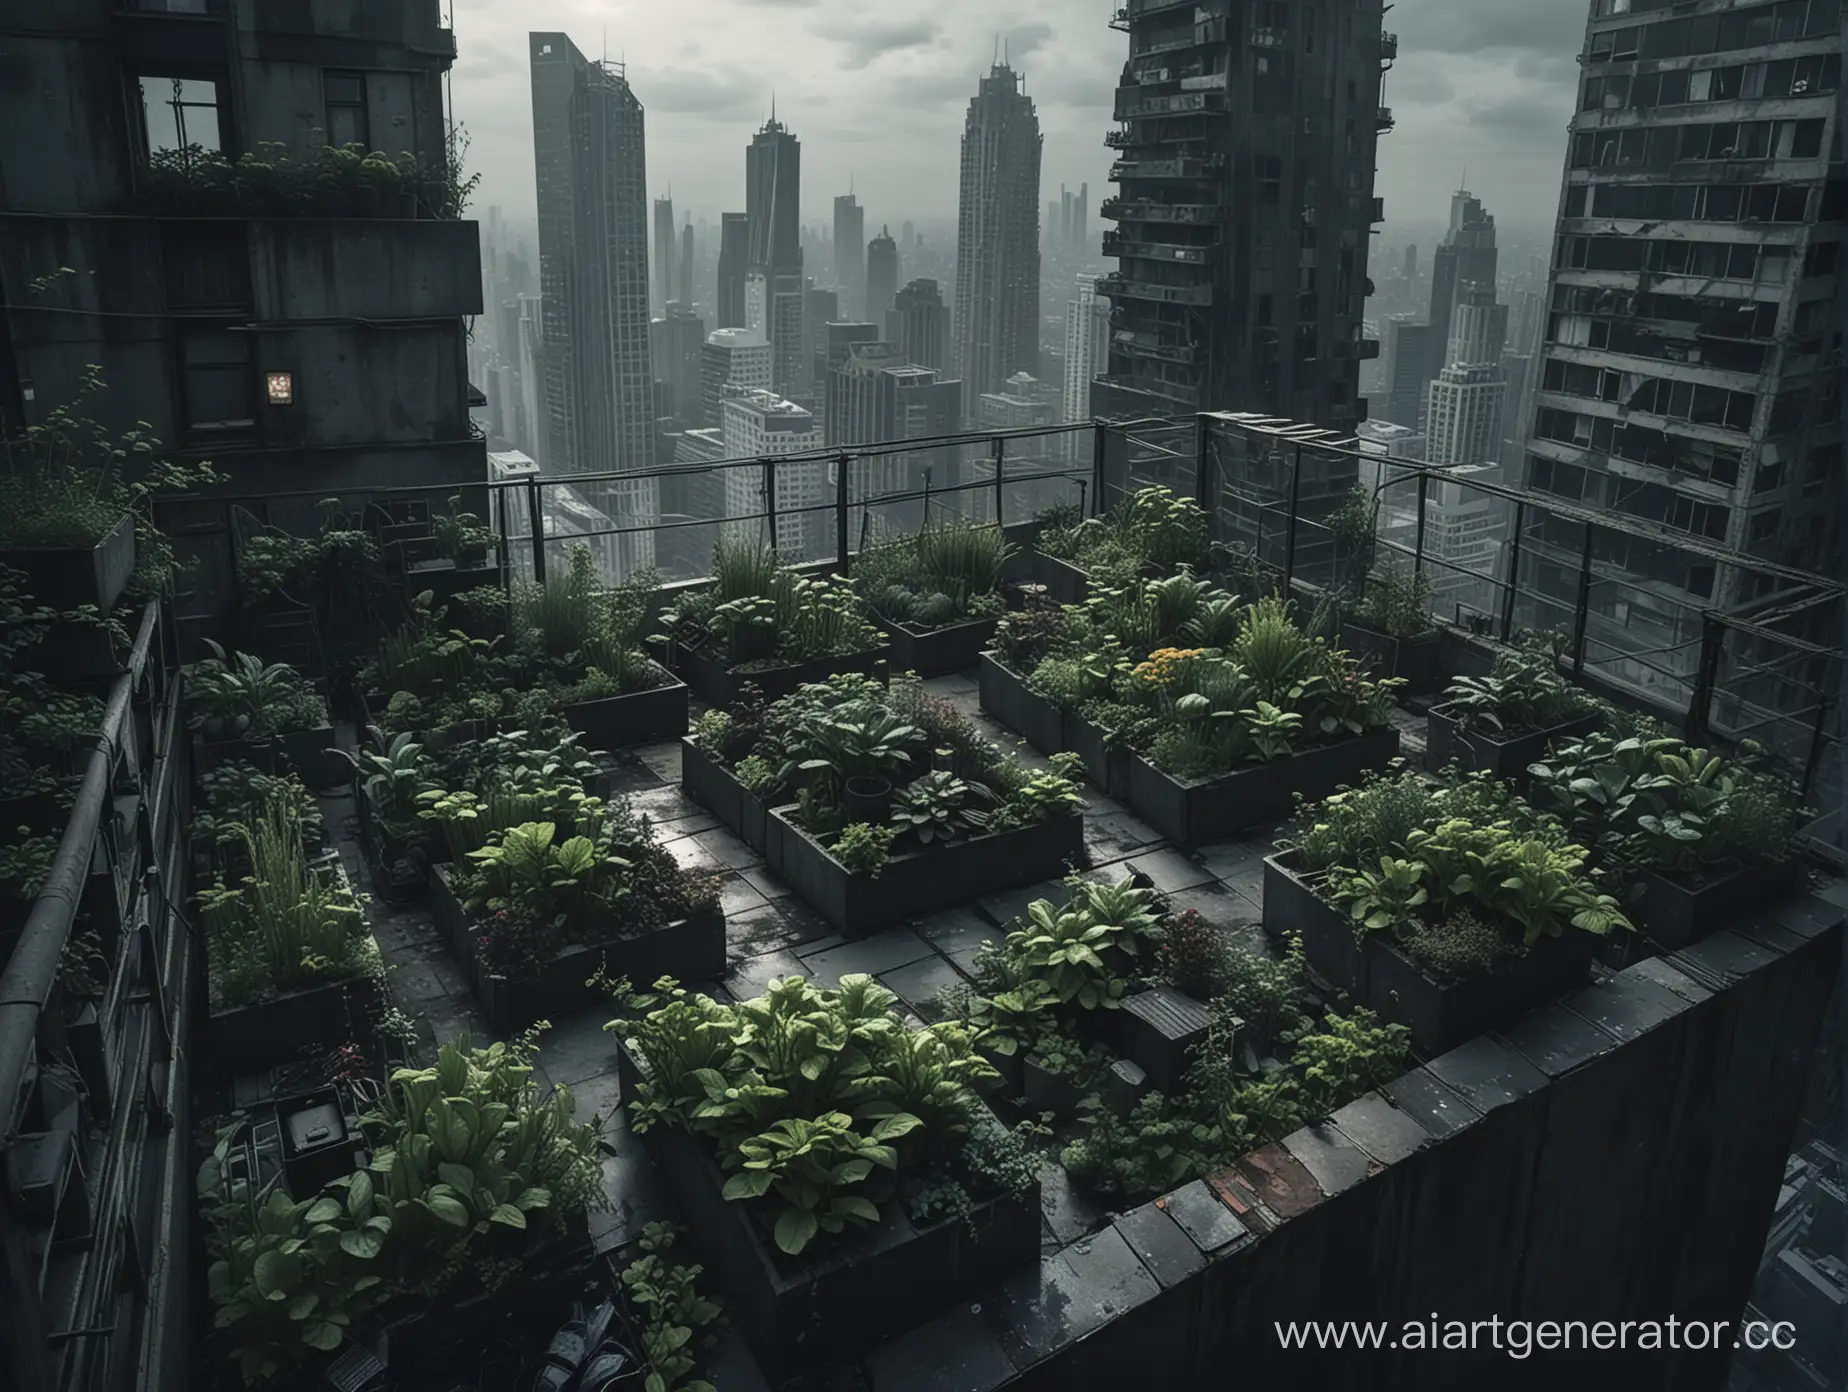 PostApocalyptic-Rooftop-Garden-Amidst-Urban-Skyscrapers